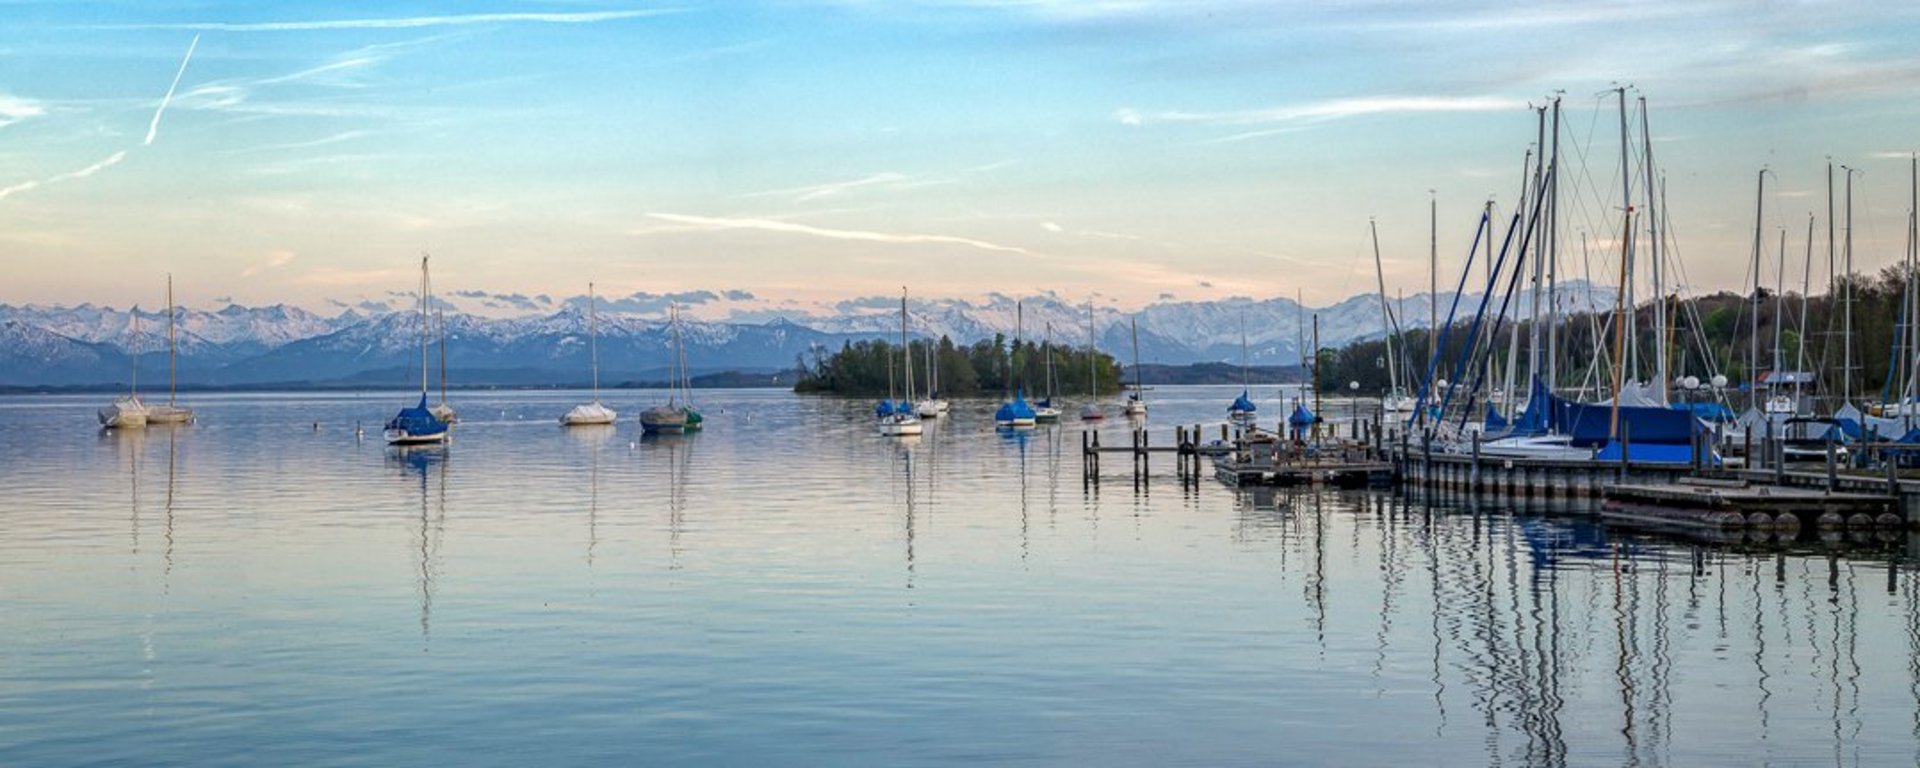 Segeln, Surfen, Bootfahren mit Panorama auf dem Starnberger See